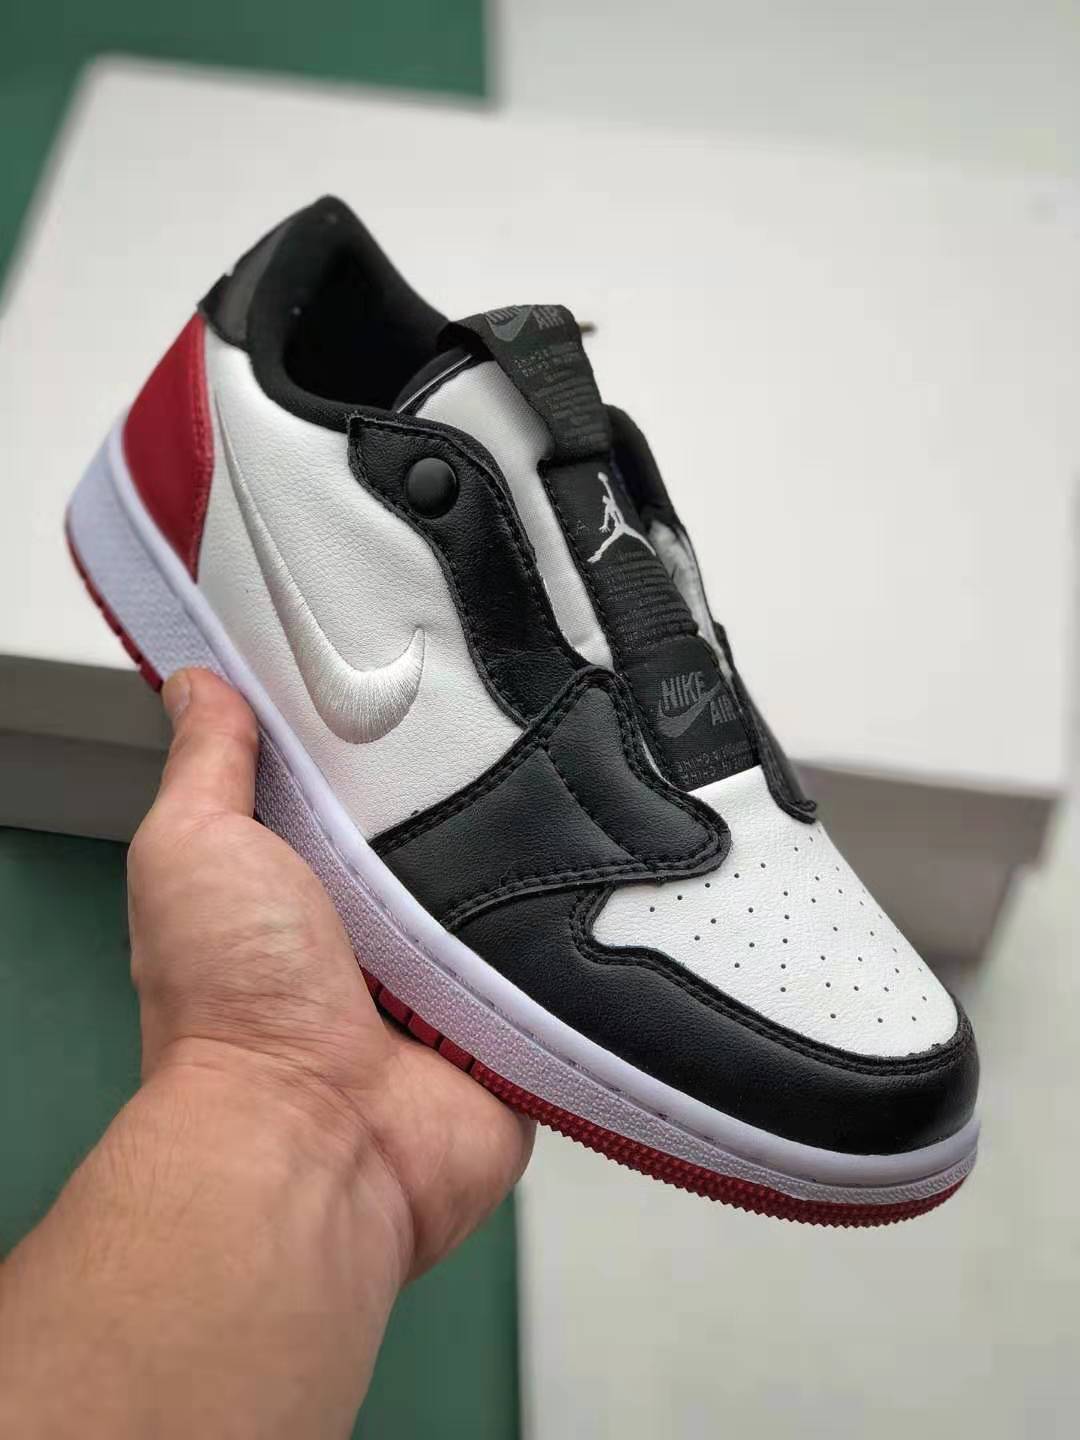 Air Jordan 1 Low Slip 'Black' AV3918-001 - Stylish and sleek sneakers for iconic streetwear look